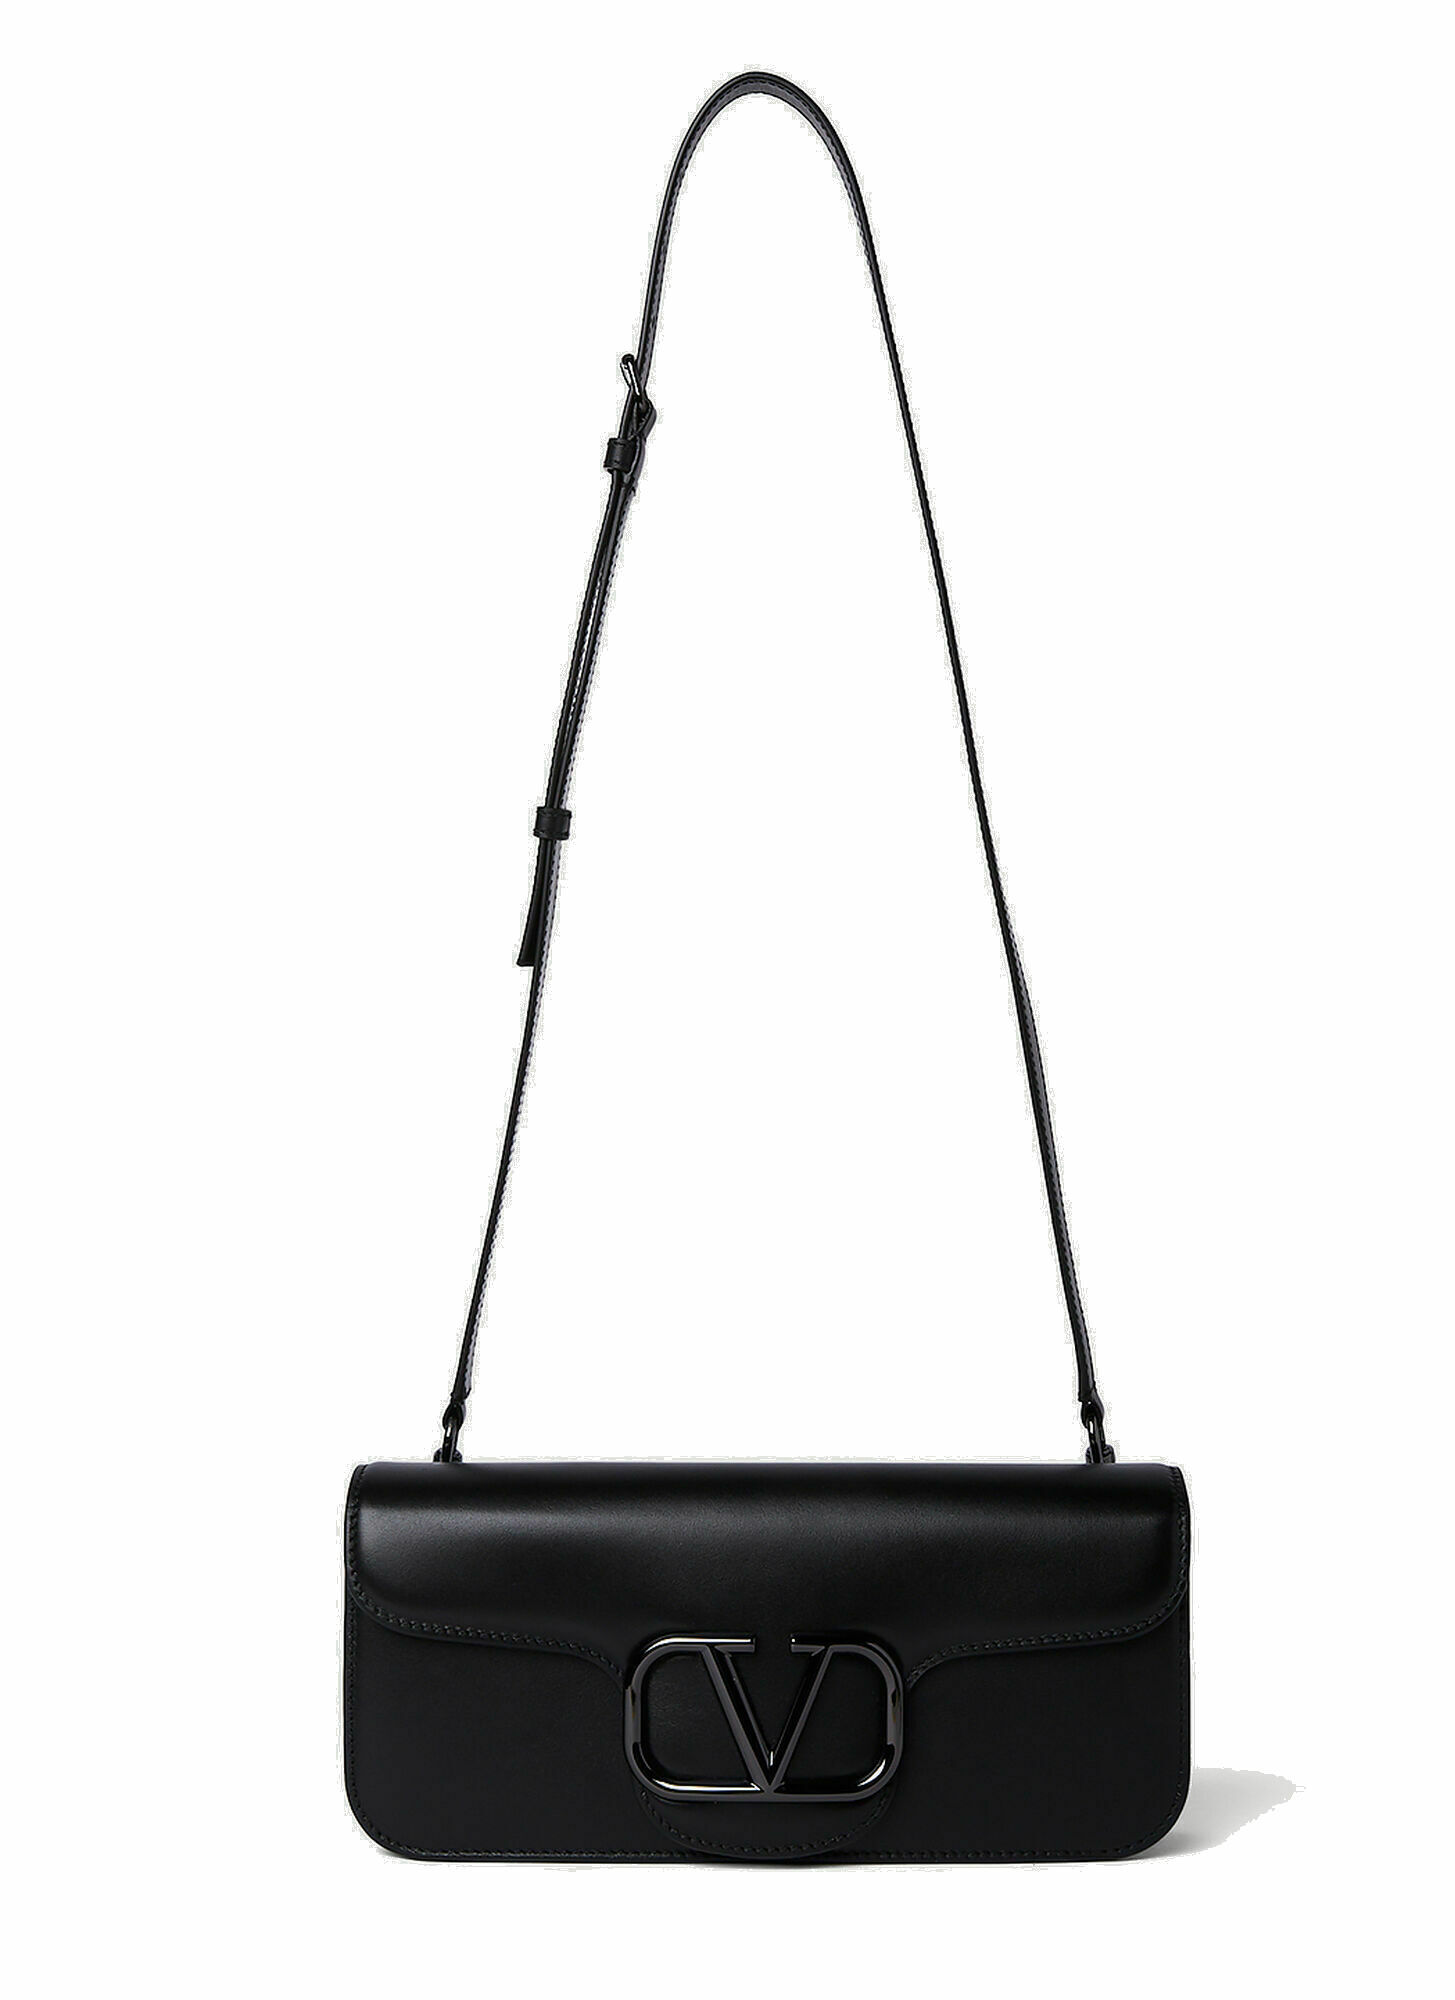 Photo: VLogo Crossbody Bag in Black